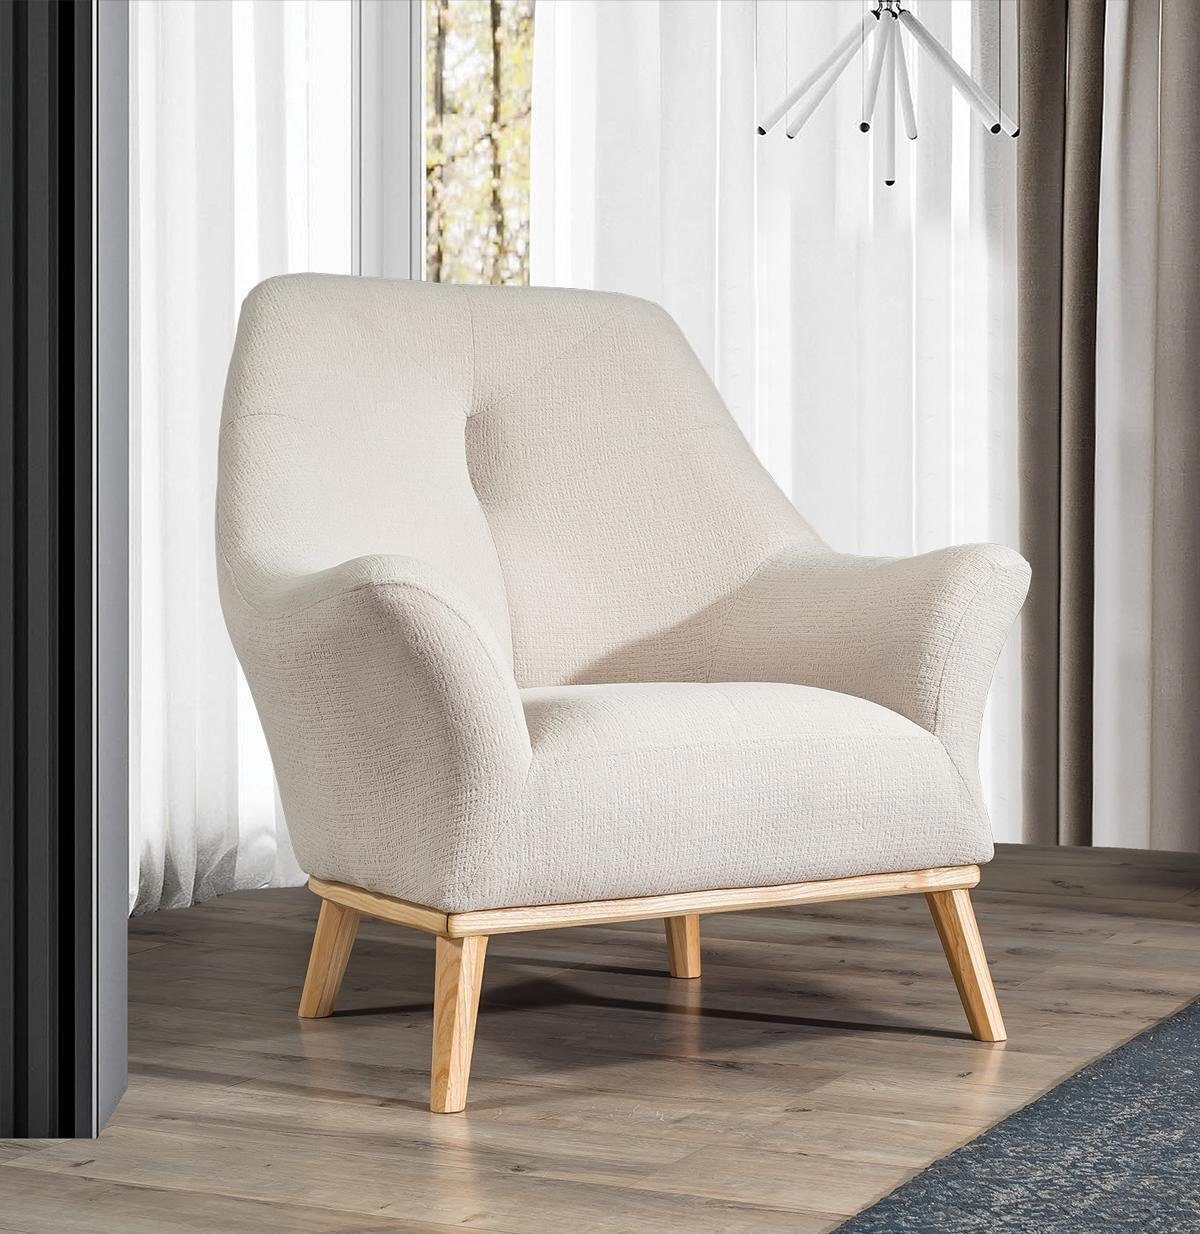 JVmoebel Sessel Relax Club Sessel 1 Sitzer weiß Wohnzimmer Luxus Design Möbel Textil